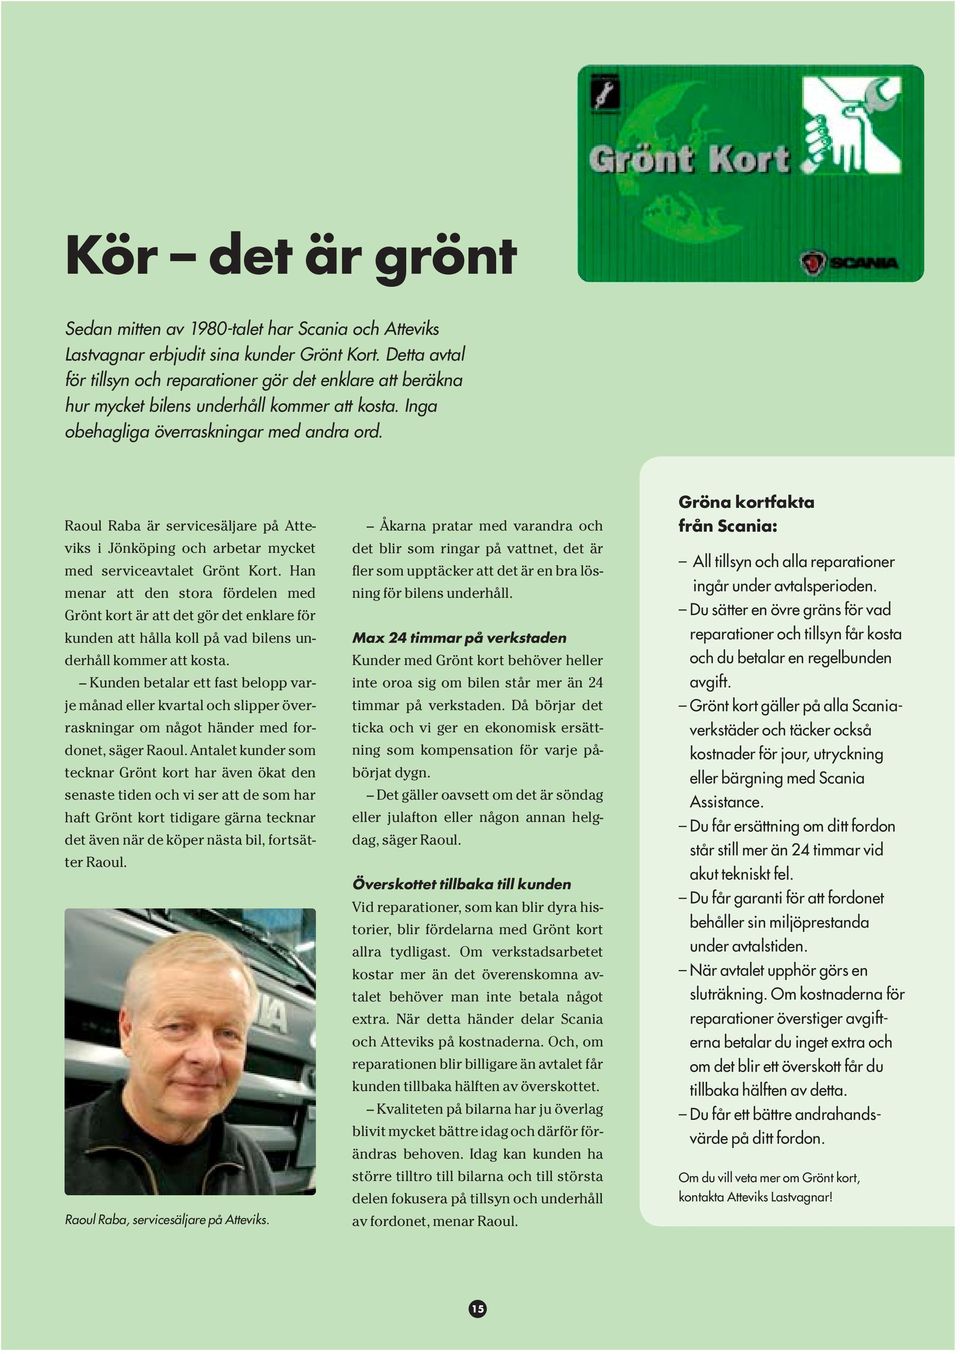 Raoul Raba är servicesäljare på Atteviks i Jönköping och arbetar mycket med serviceavtalet Grönt Kort.